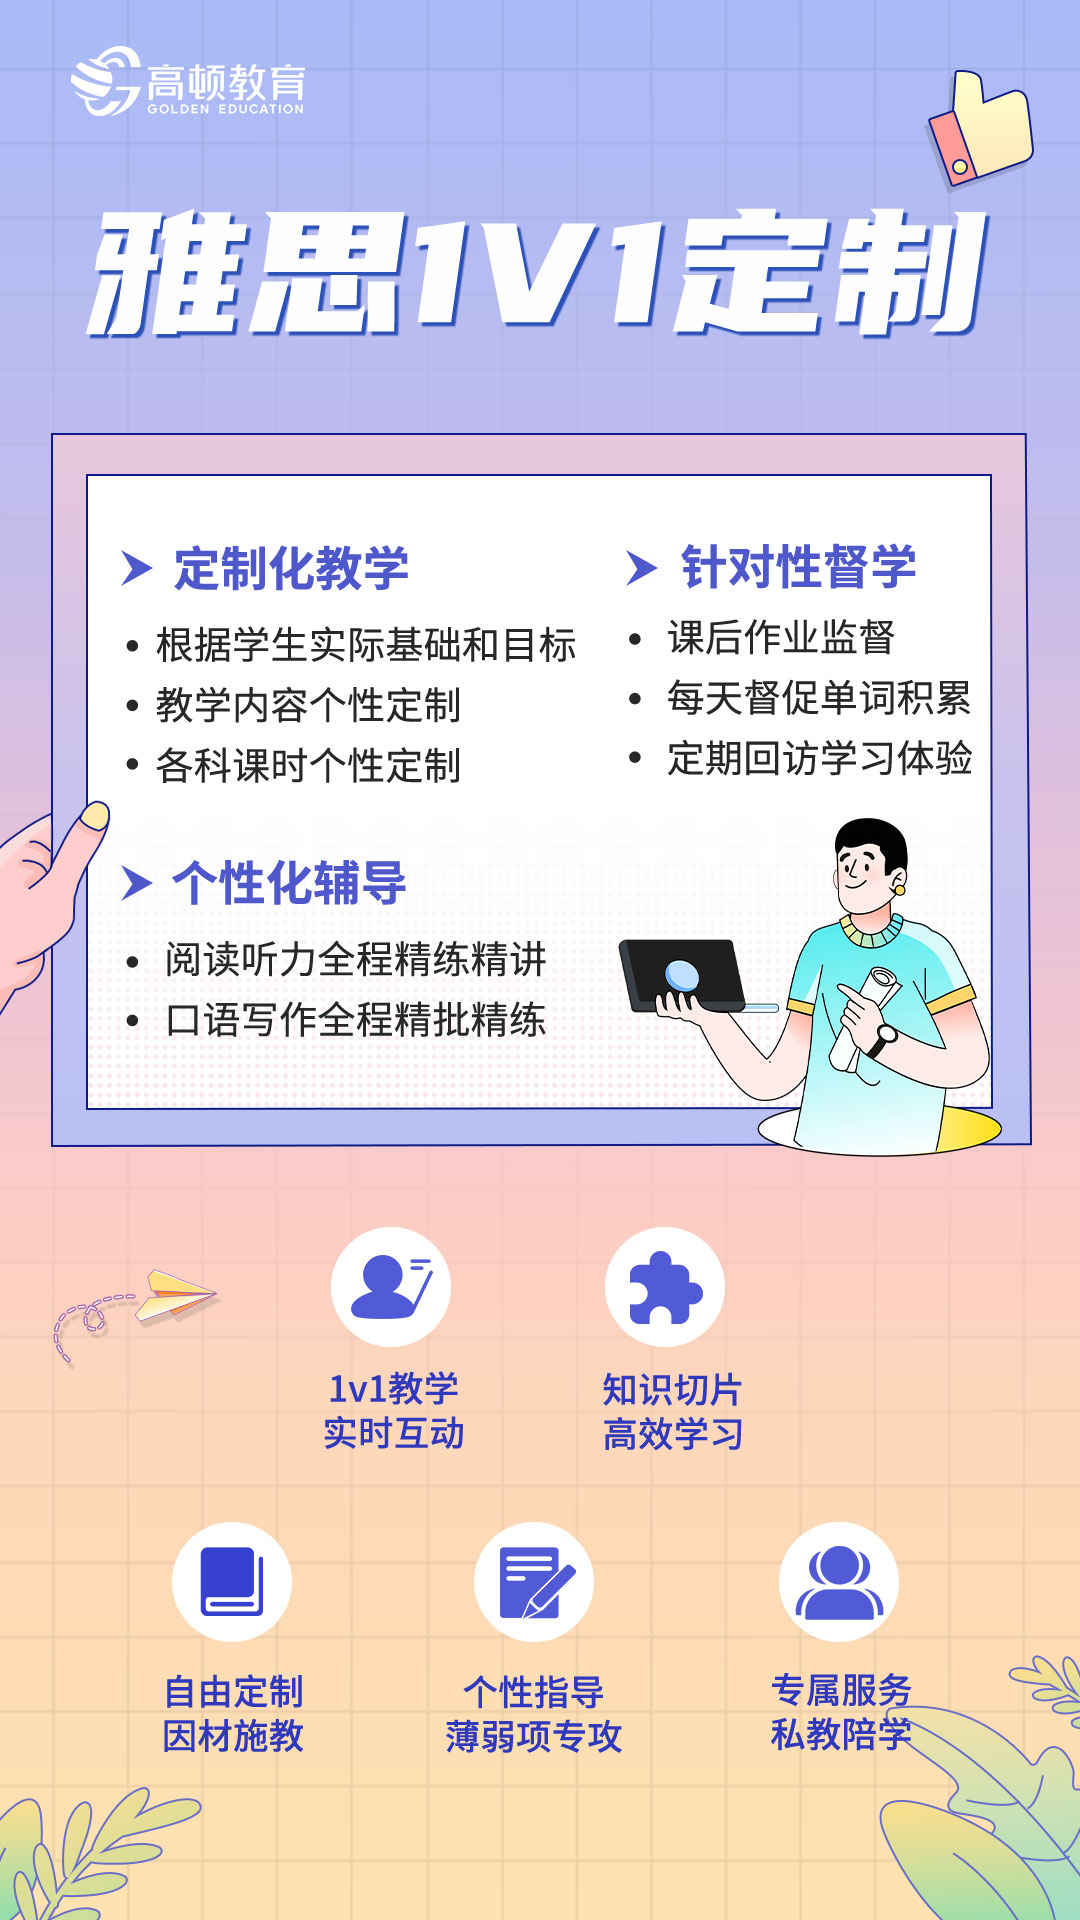 https://simg01.gaodunwangxiao.com/uploadfiles/product-center/202210/21/3172d_20221021110453.jpg